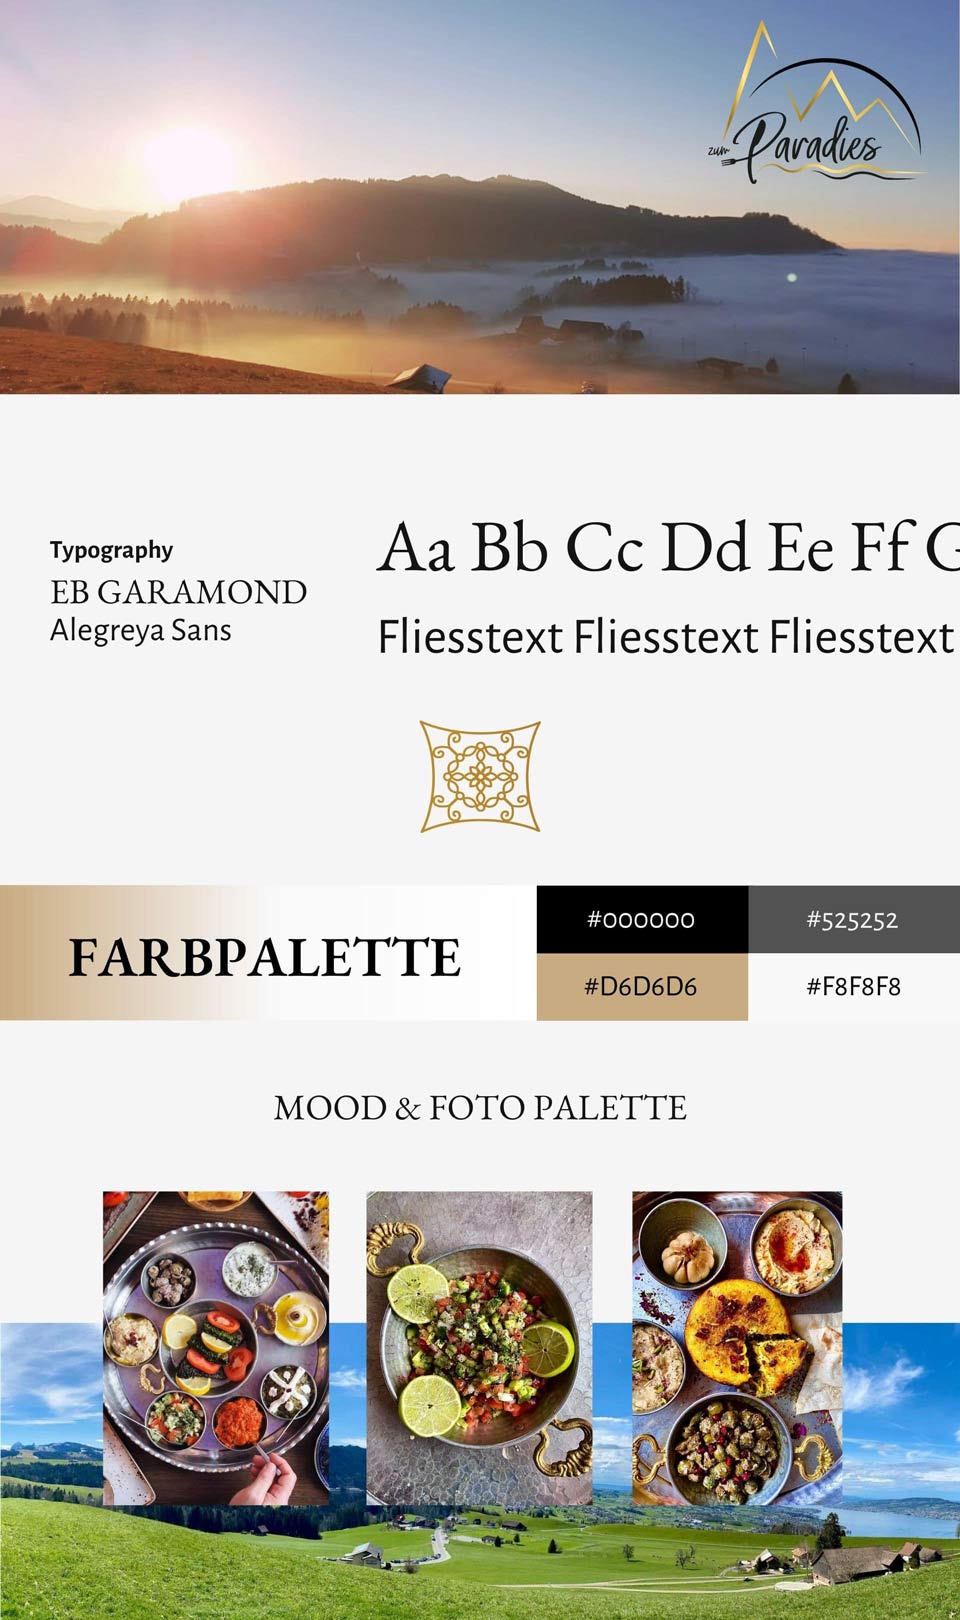 Neuerstellung Webseite Gastronomie Restaurant zum Paradies Farbpalette, Moodboard, Typografie